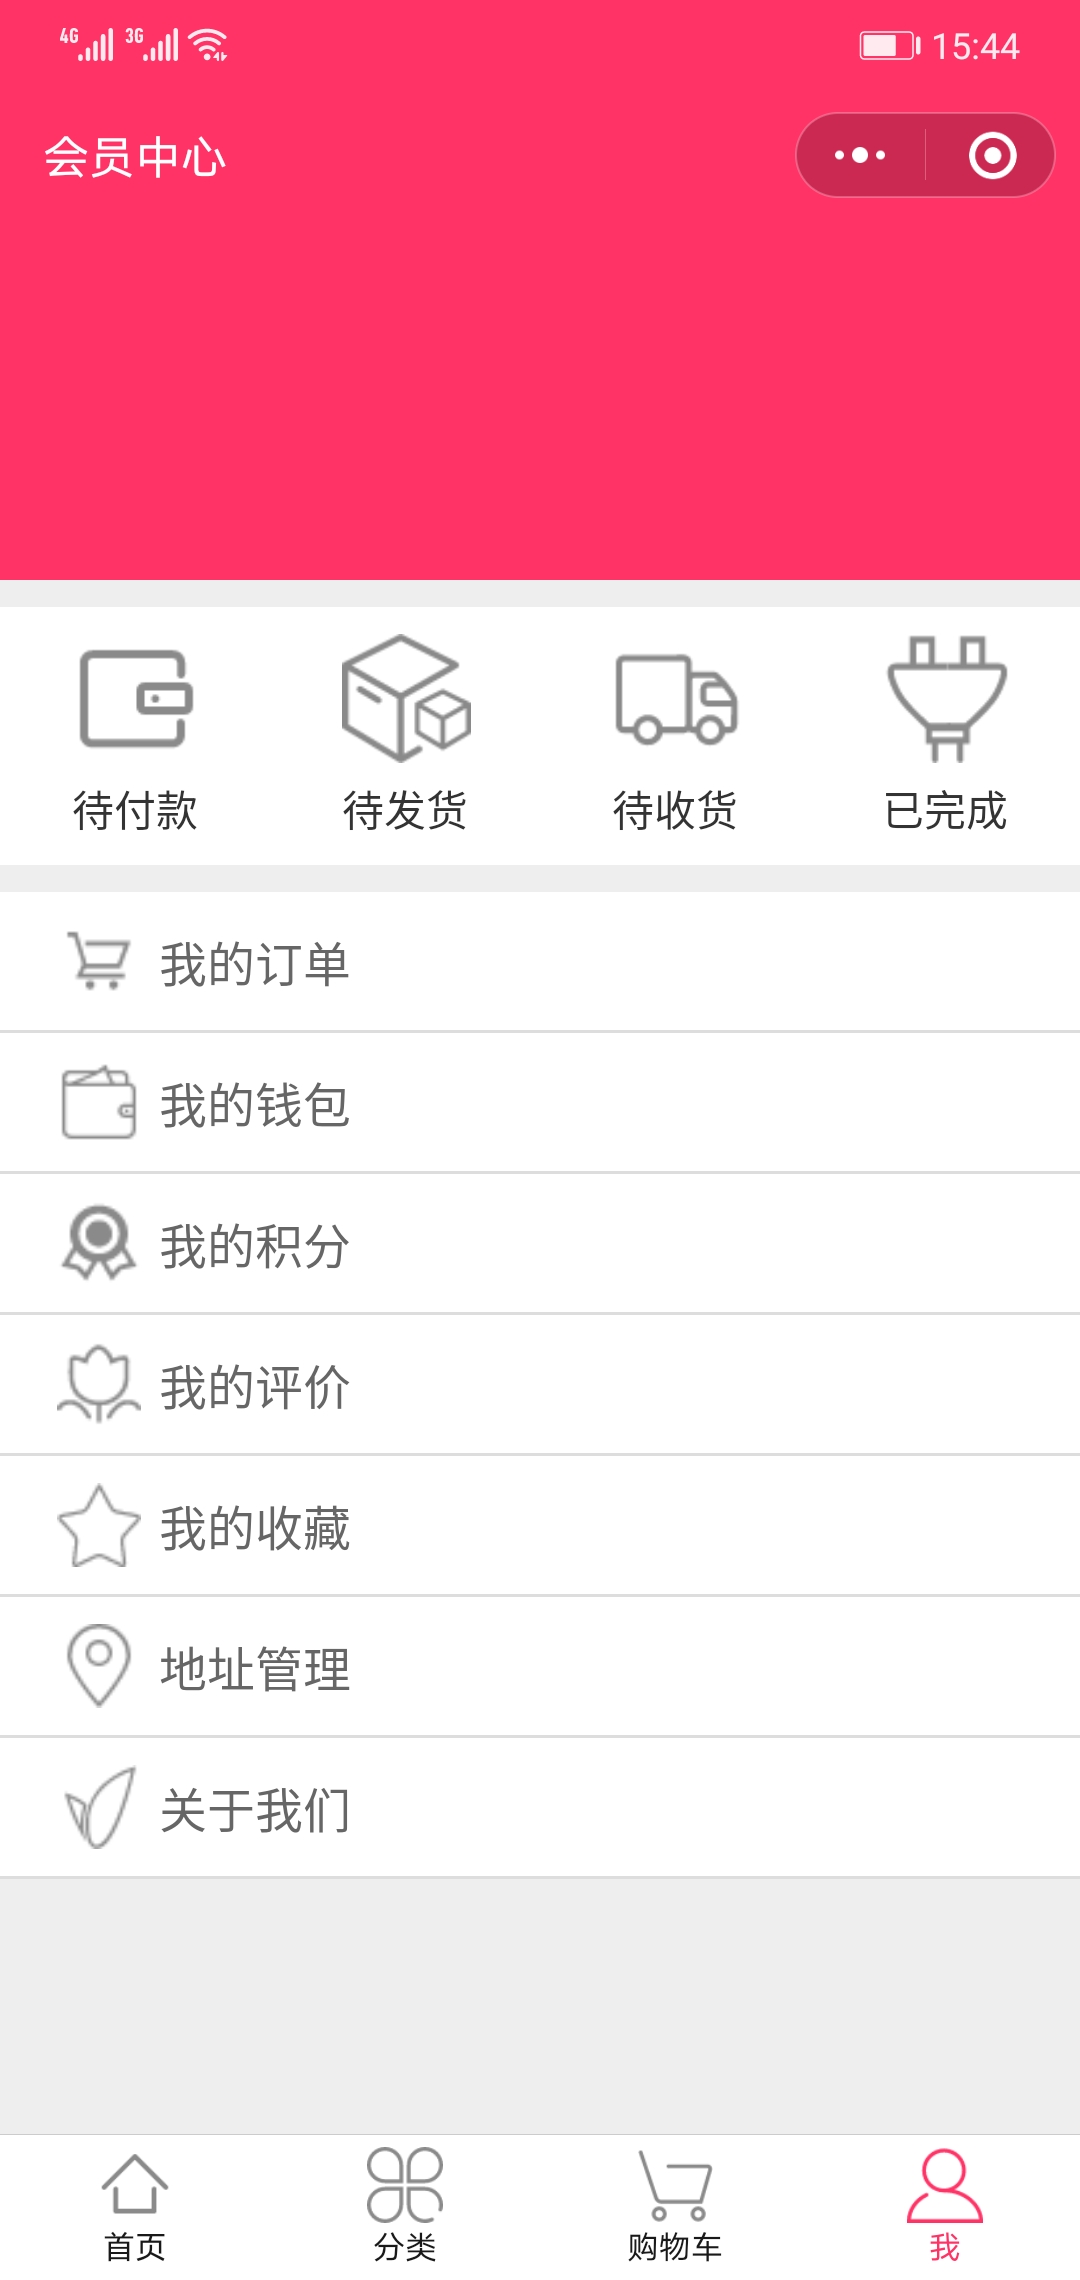 郑州习惯度高的购物商城小程序靠谱定制